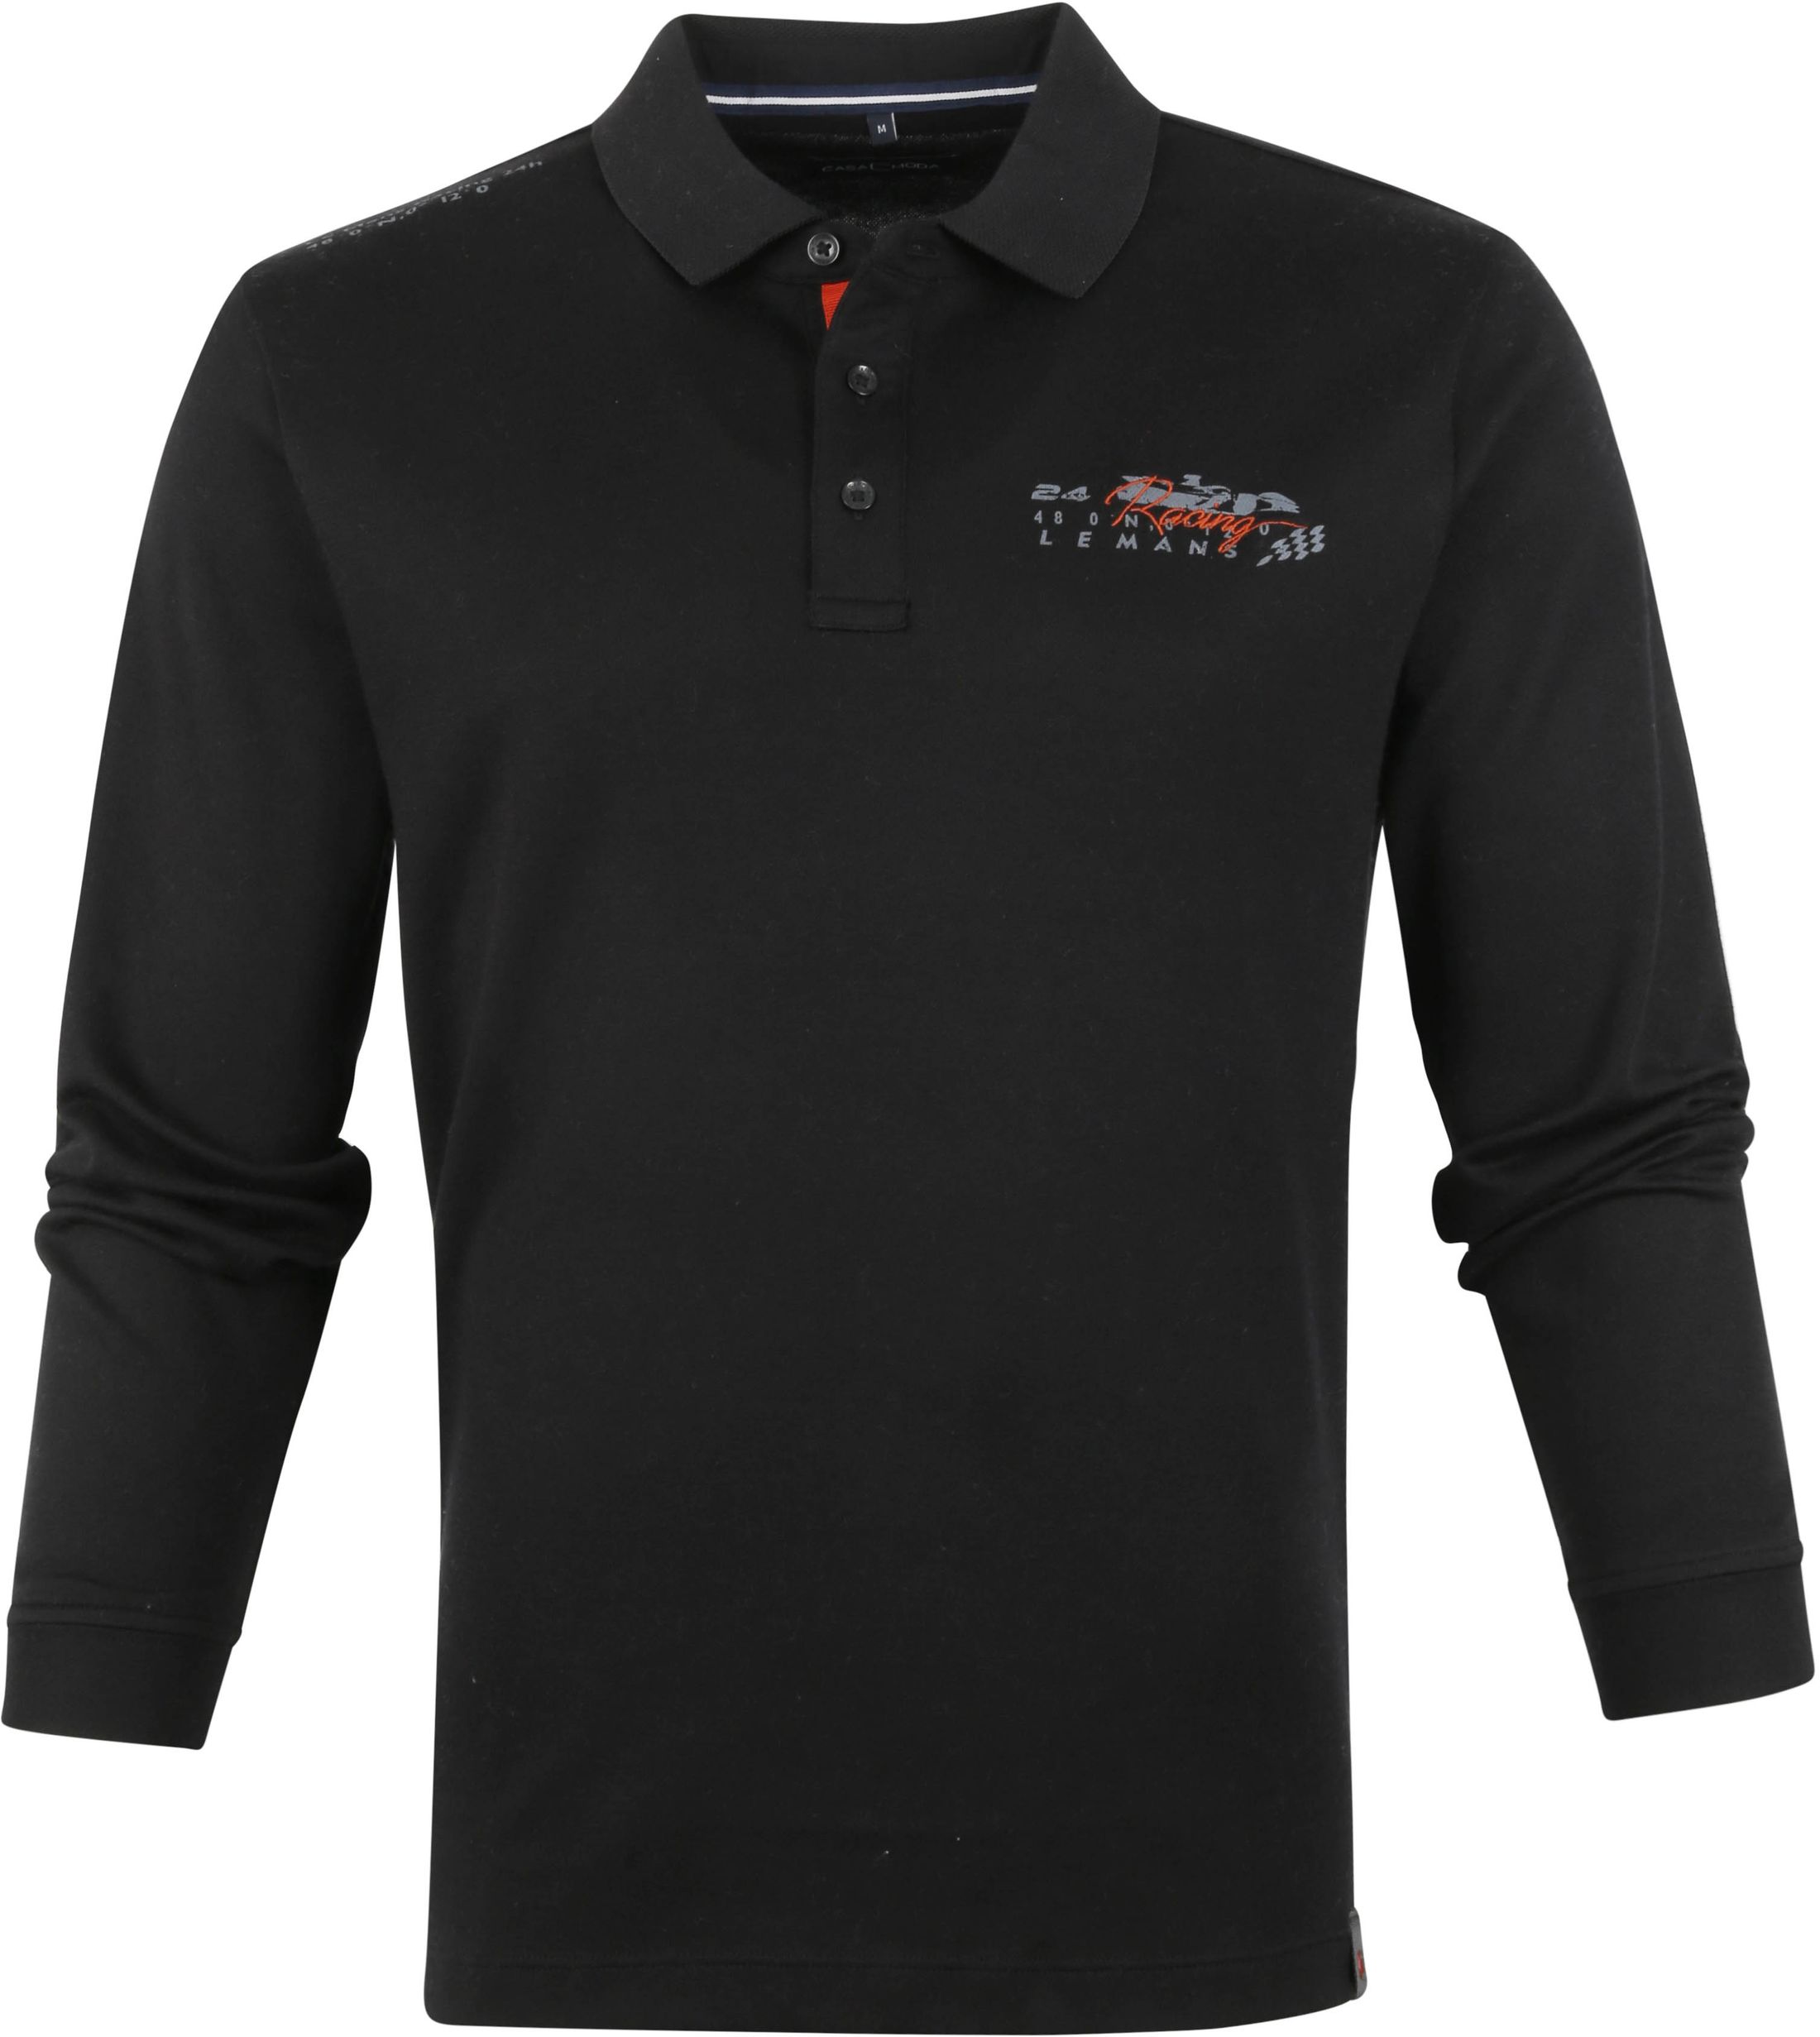 Casa Moda Long Sleeve Polo Shirt Racing Black size 3XL